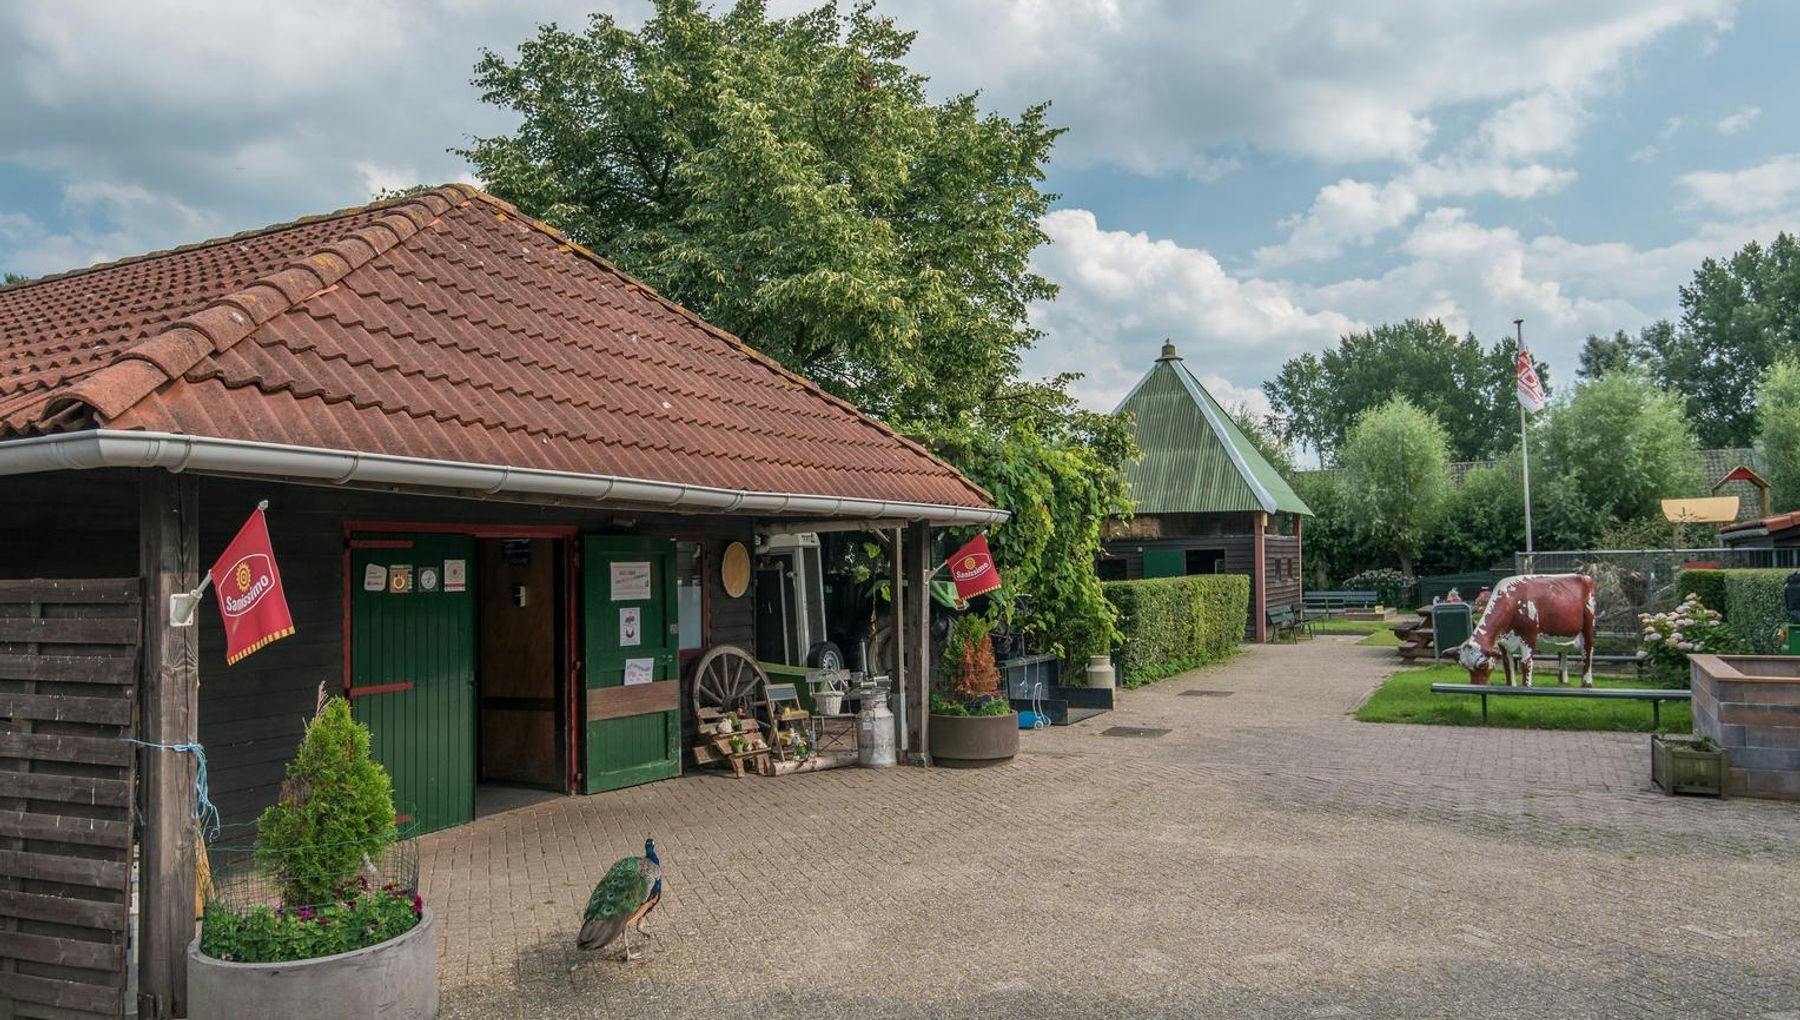 Petting Zoo de Bijlmerweide farm Buurtencampagne 2017